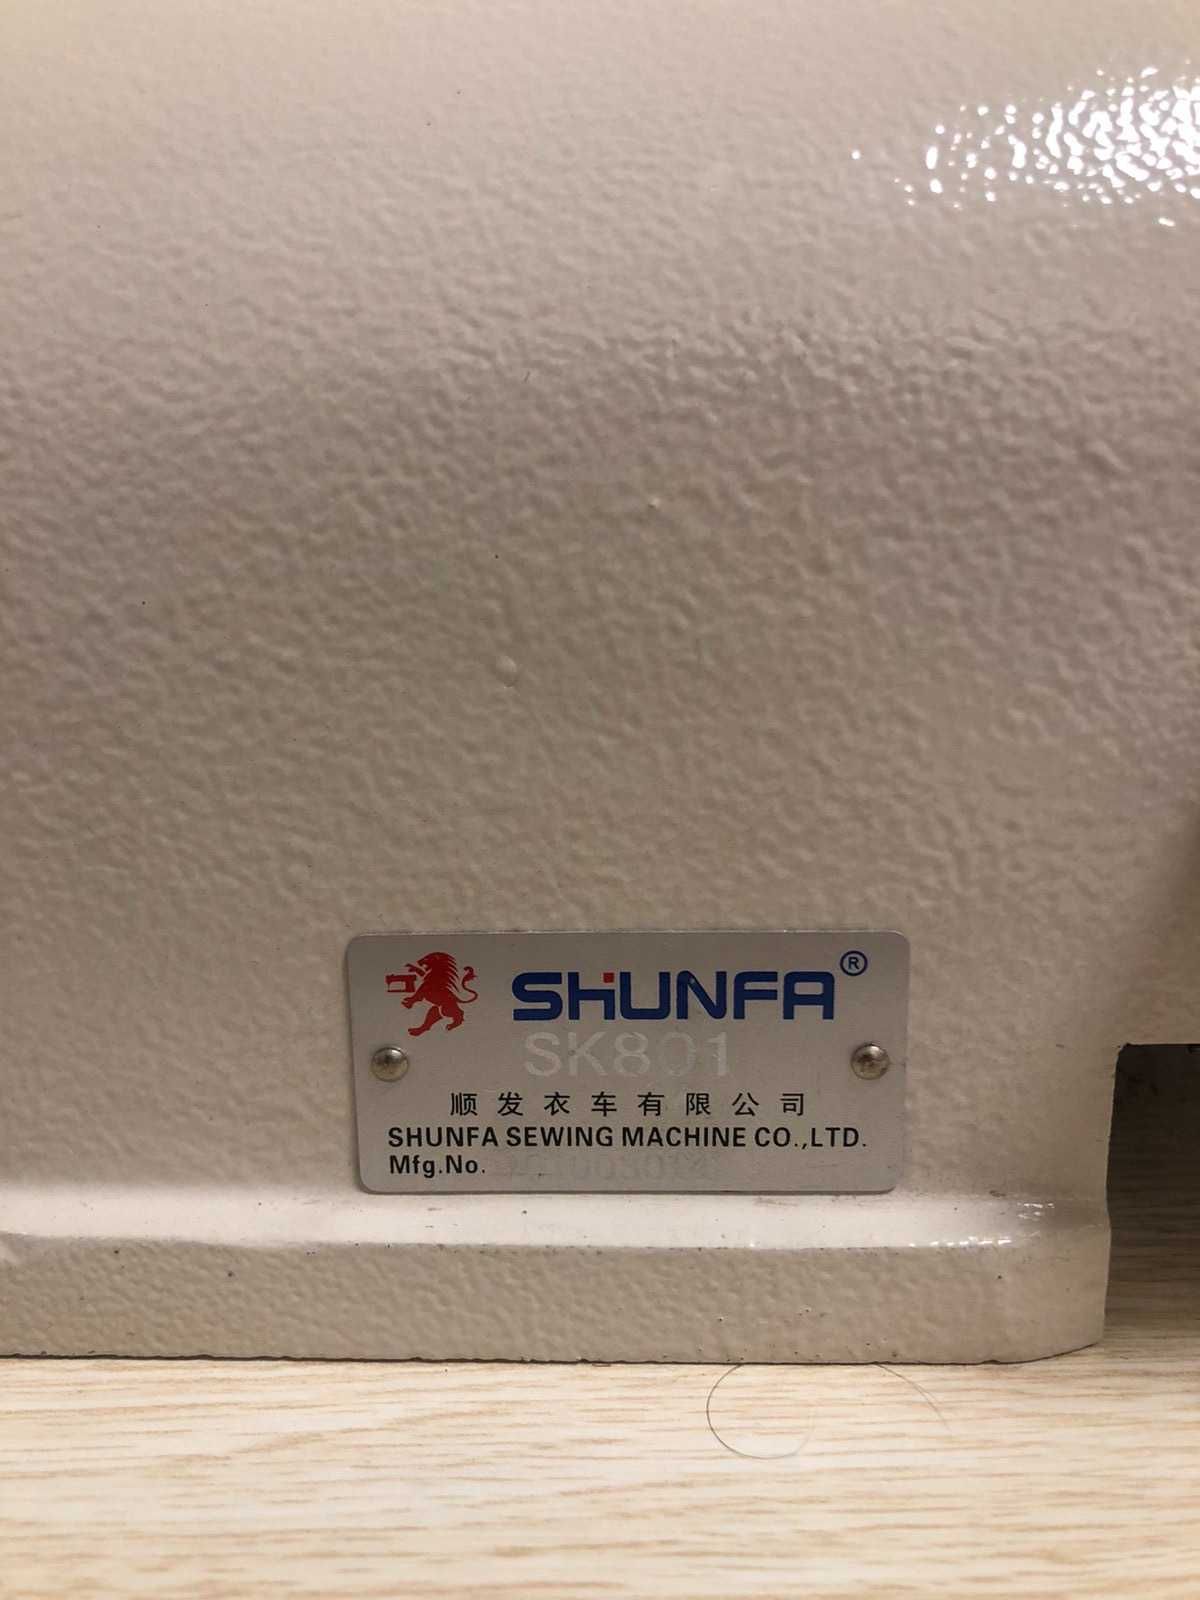 Shunfa SK-801, MIK 9910, промислові швейнімаш